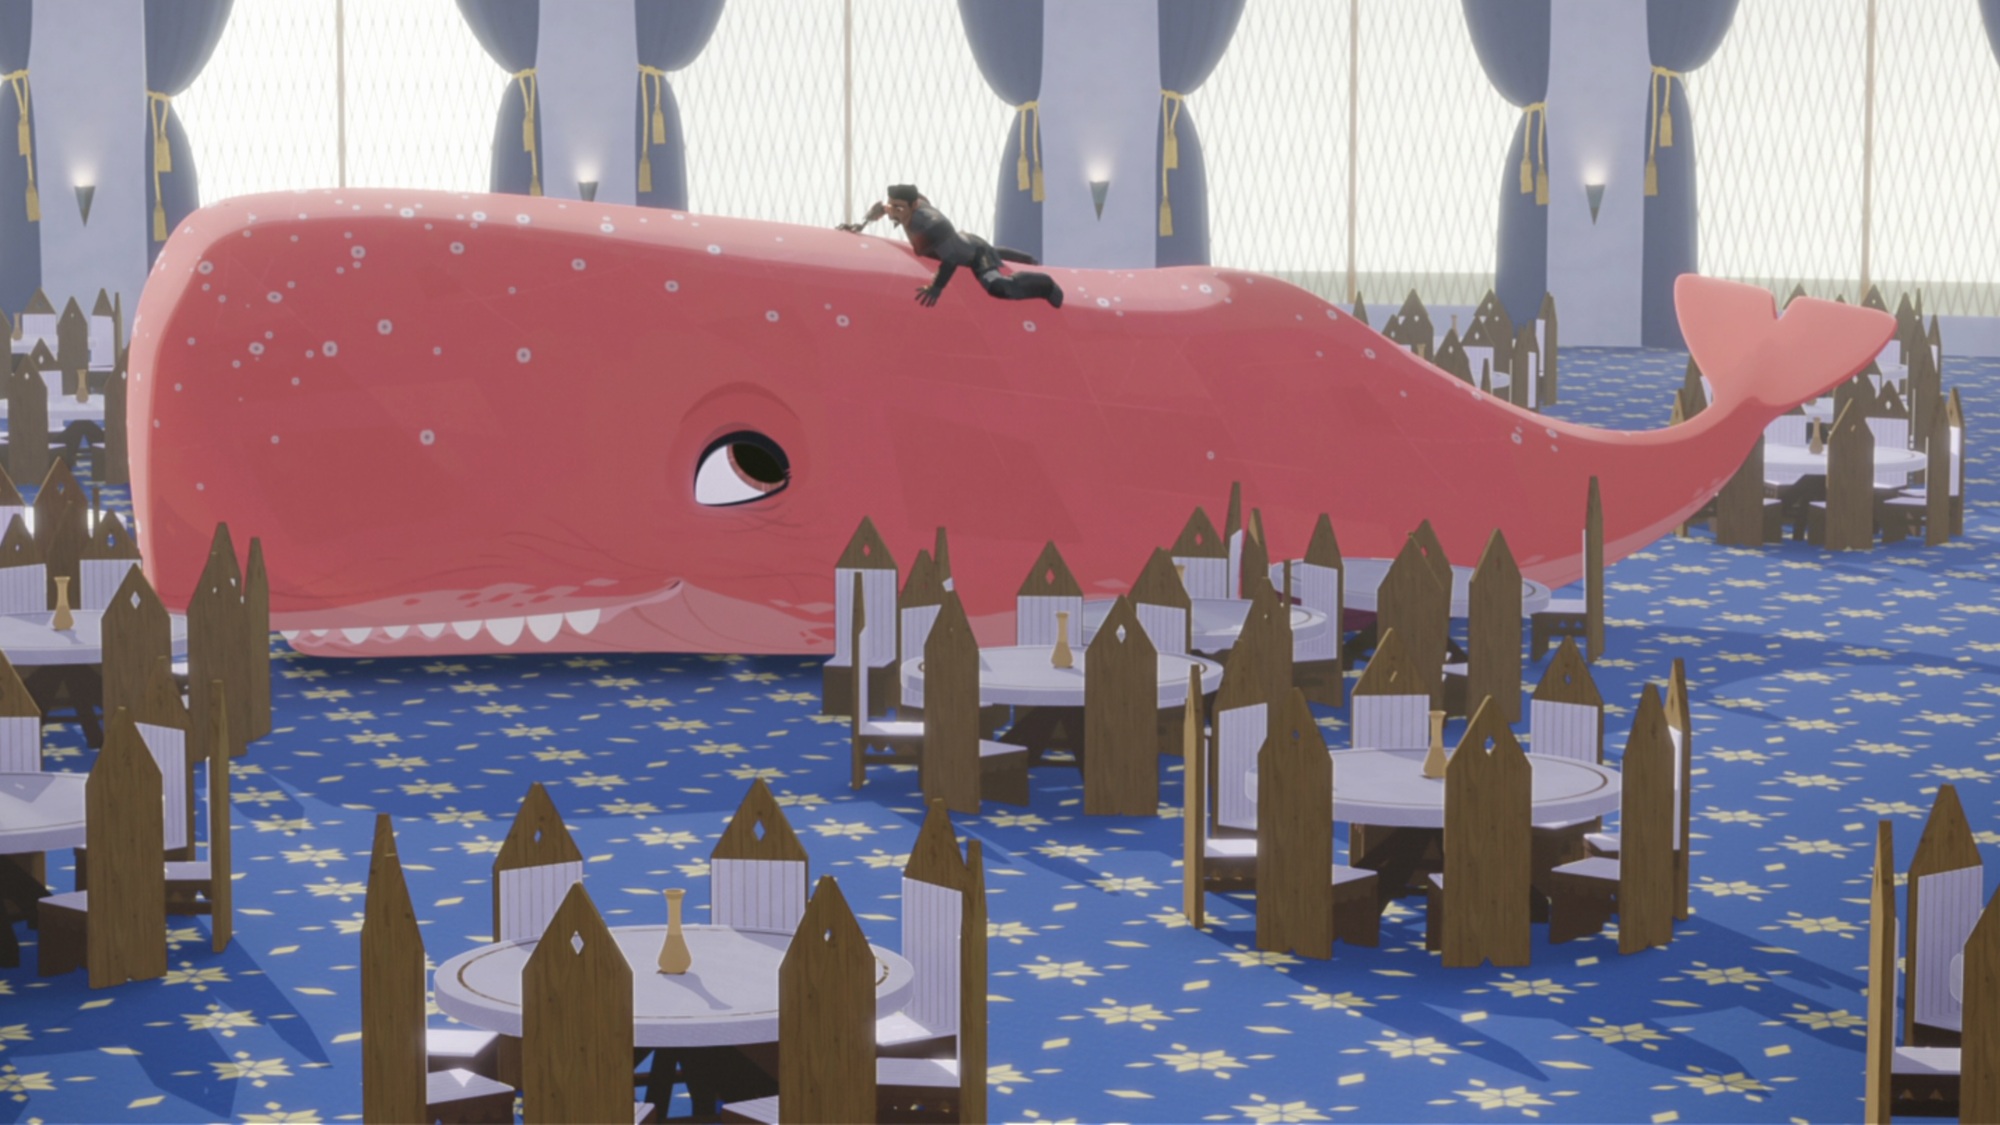 Un chevalier en armure noire repose sur le dos d'une grande baleine rose dans une salle à manger chic à la moquette bleue.